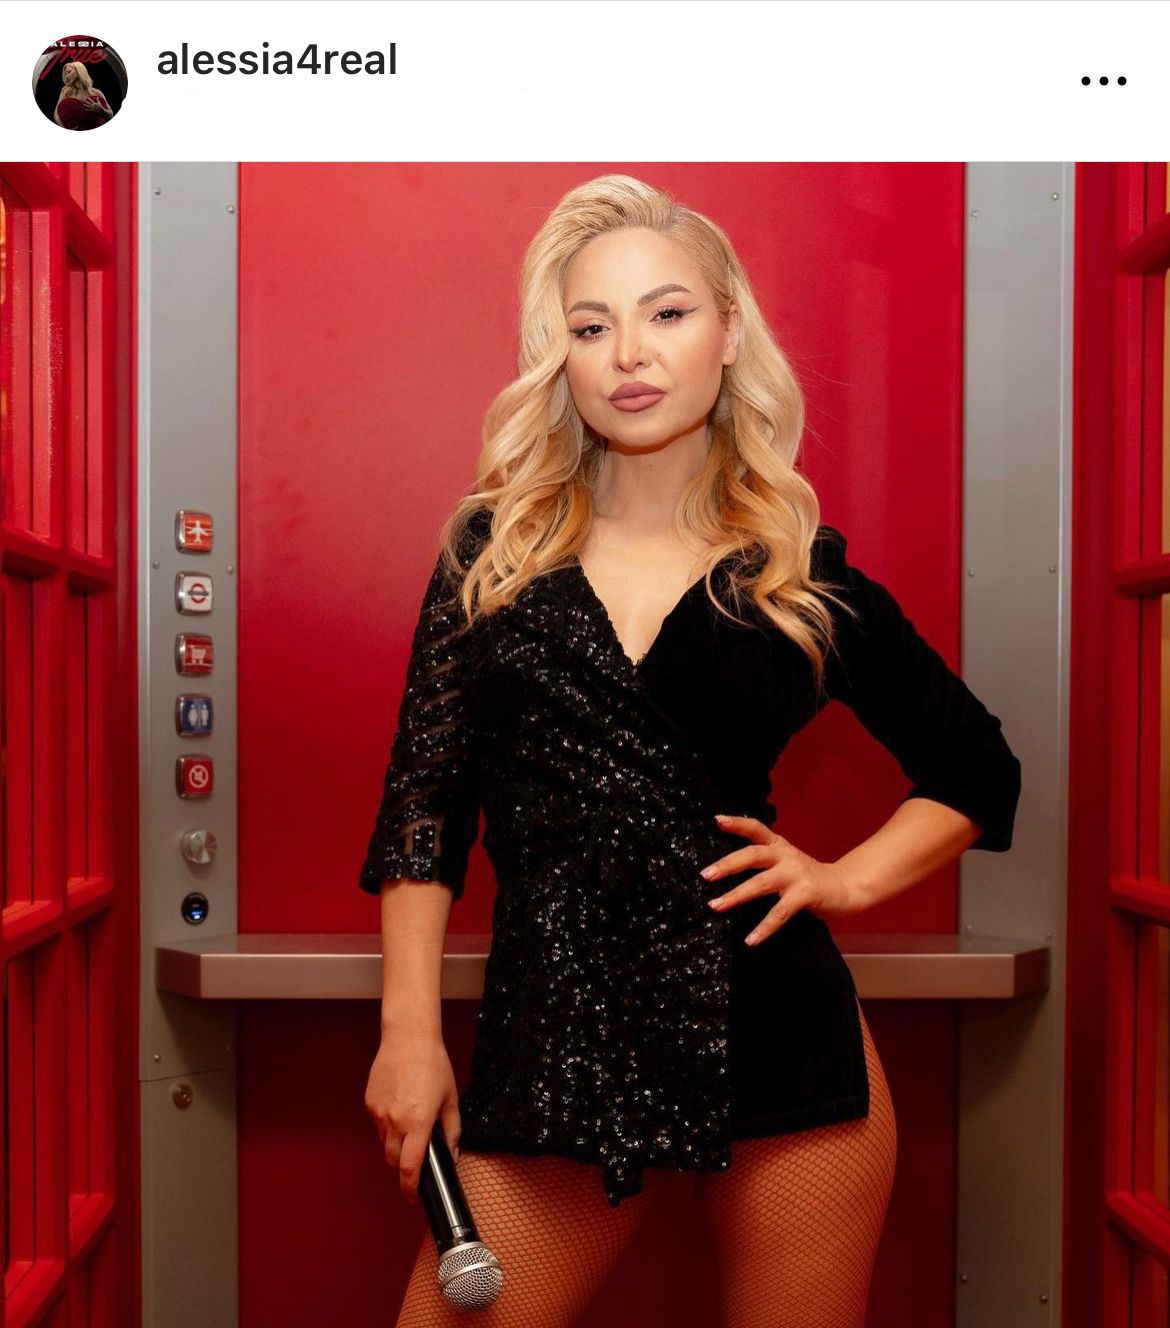 Alessia nu o suportă pe actuala iubită a tatălui copilului ei Sursa: Instagram.com/alessia4real